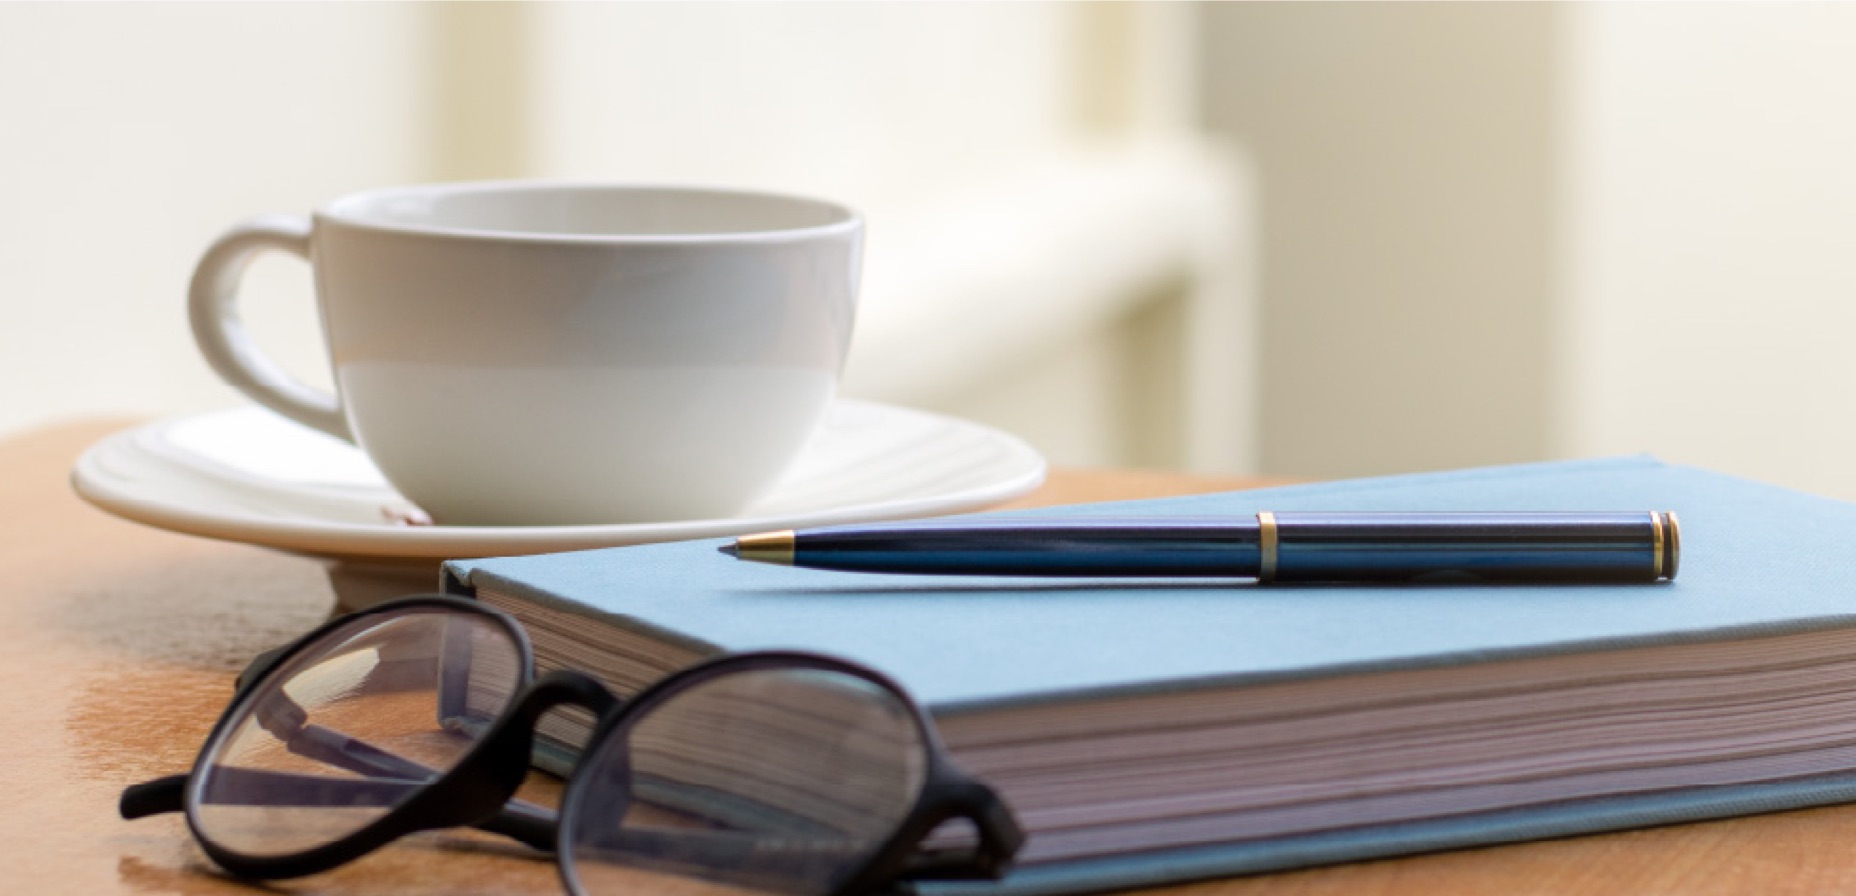 oggetti su tavolo: tazzina, agenda, penna e occhiali